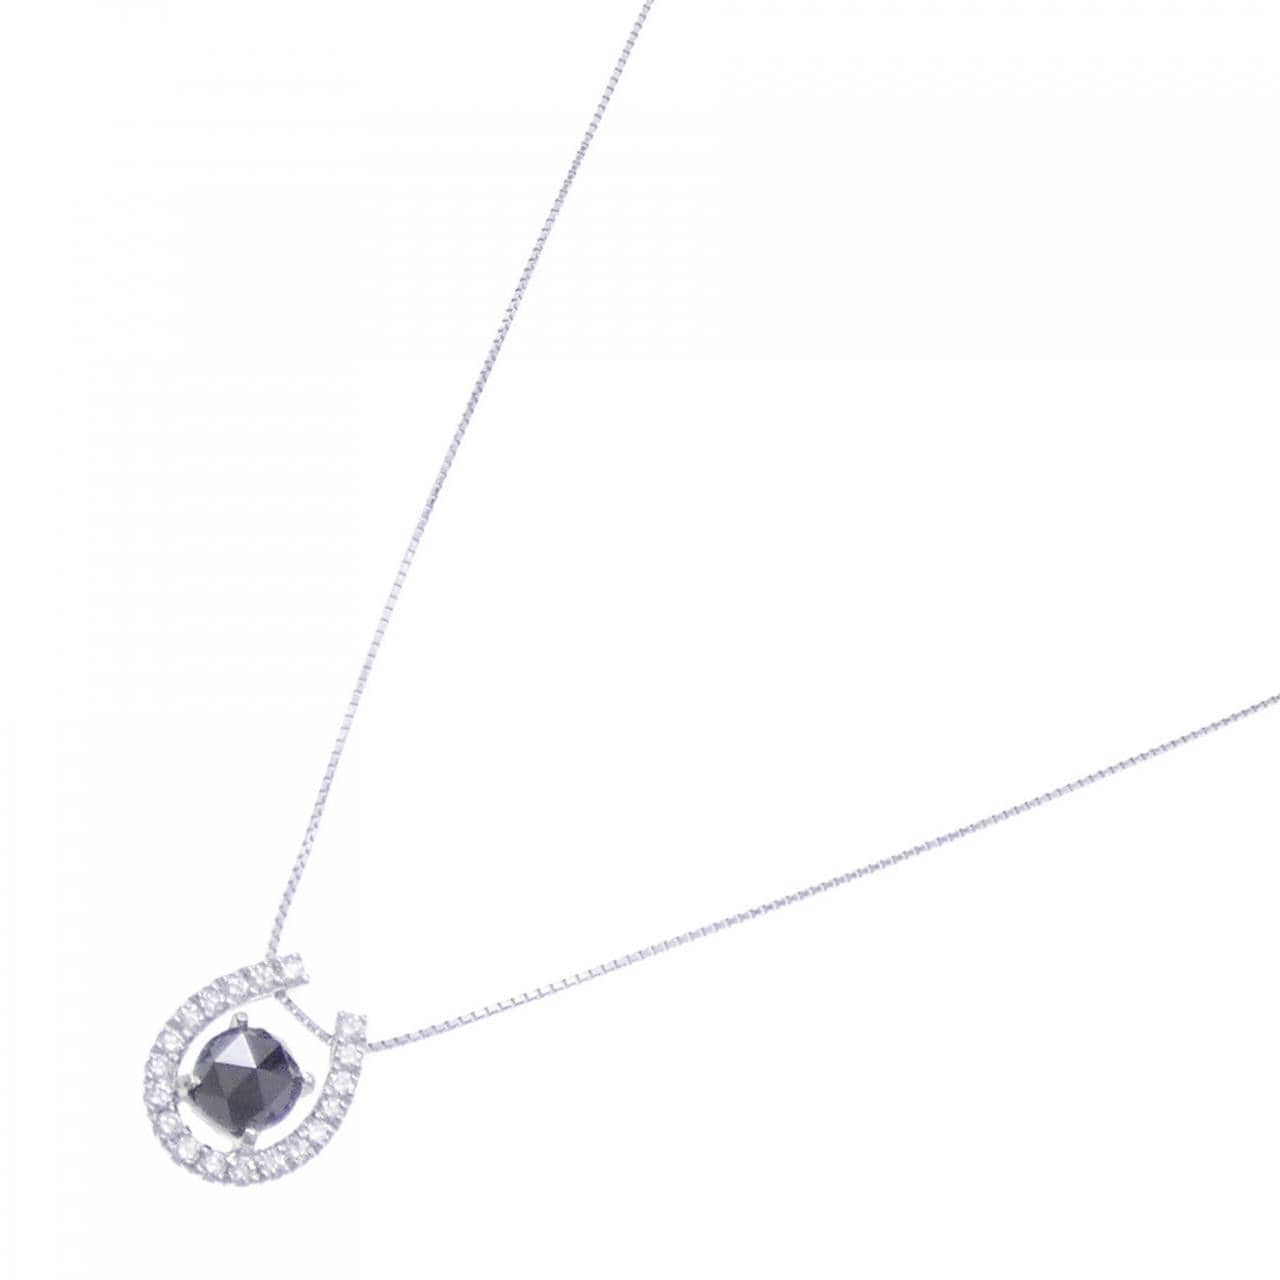 K18WG Horseshoe Diamond Necklace 1.24CT